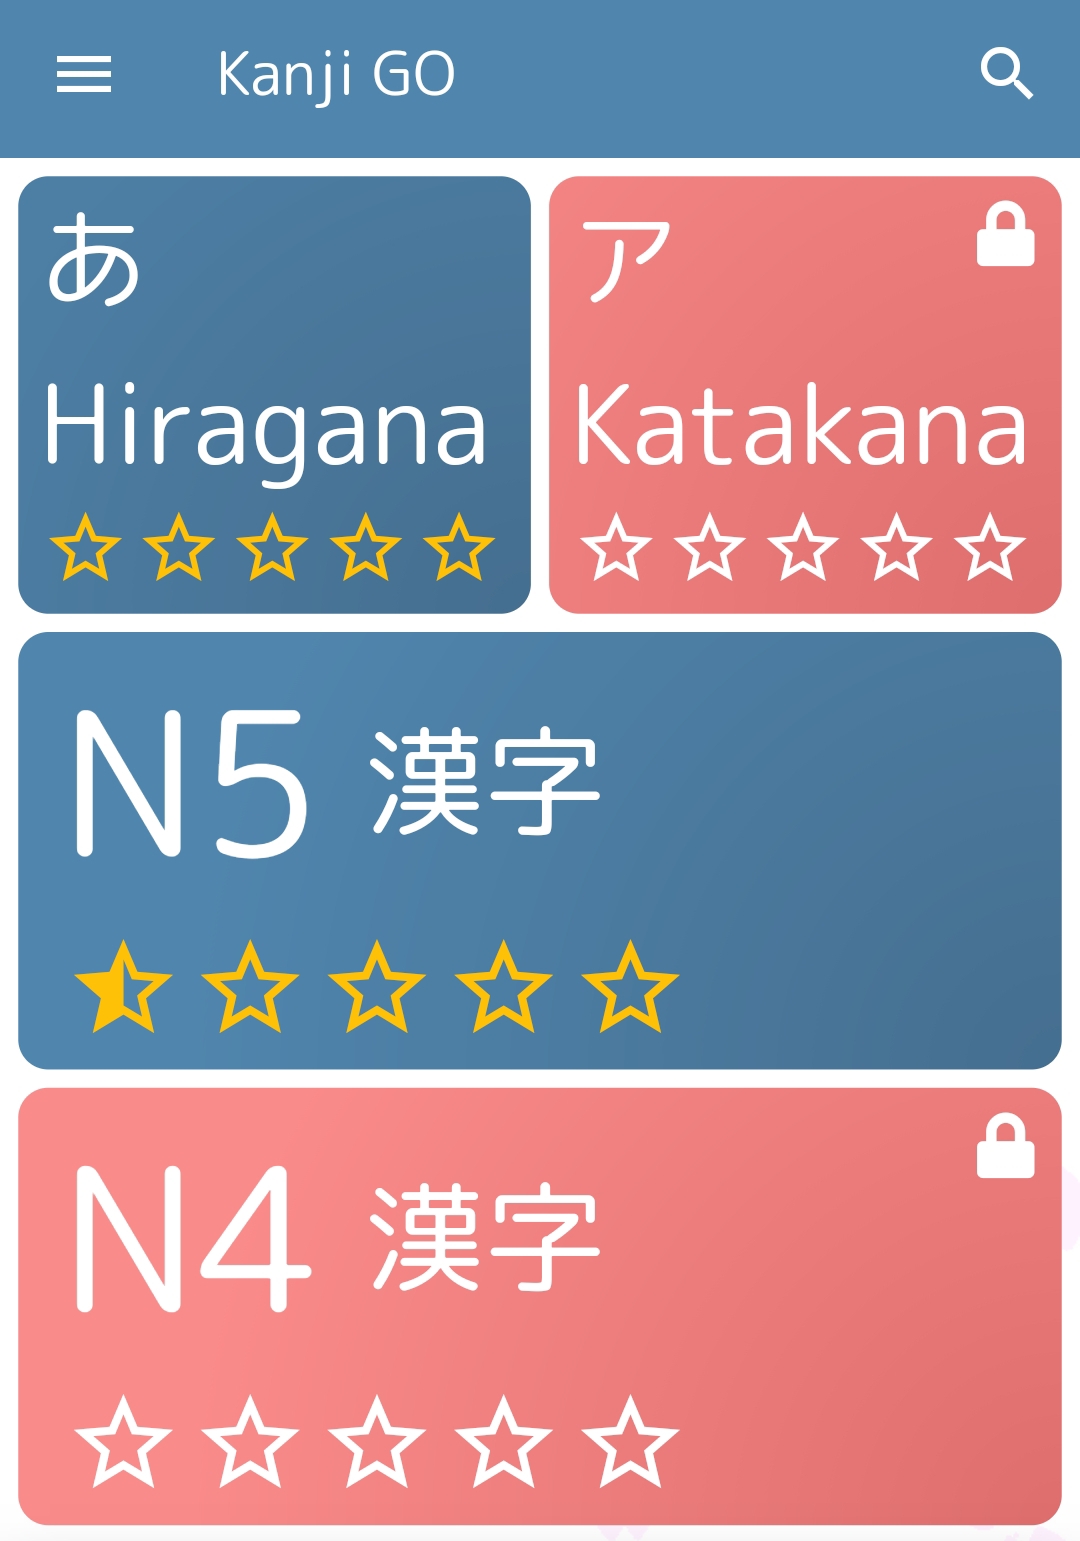 Les meilleures applications gratuites pour apprendre le japonais